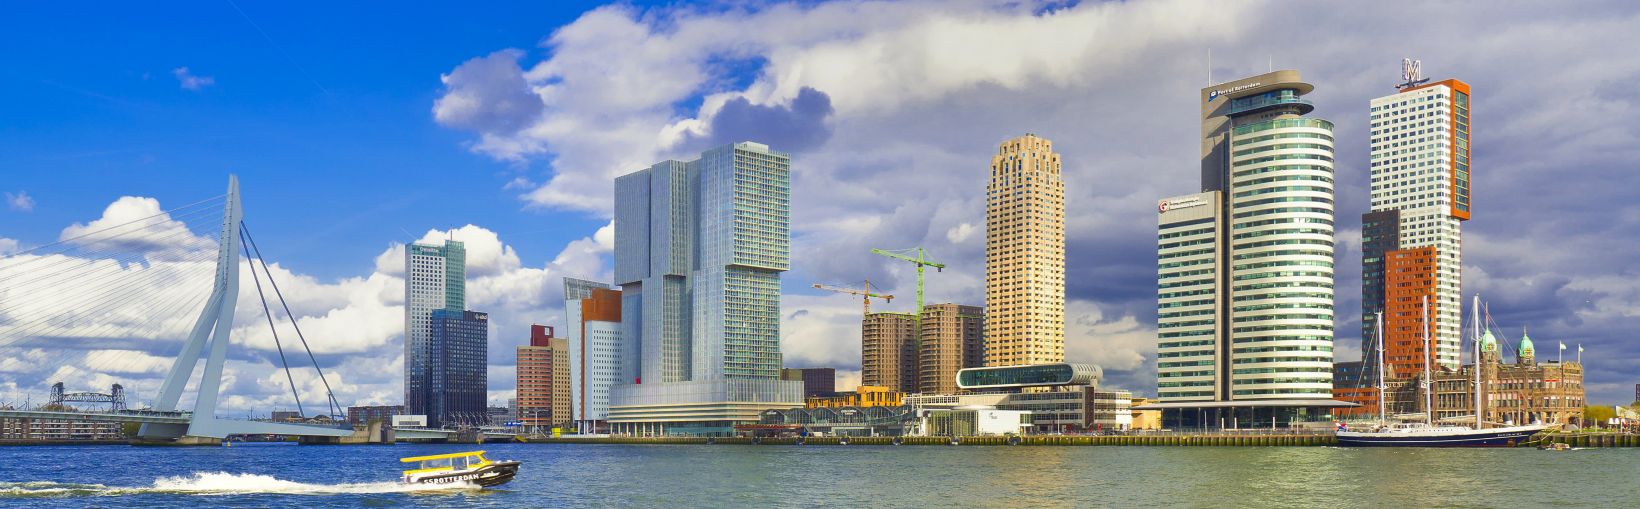 Nieuwe Maas River, Arquitectura moderna, Rotterdam, Holanda, Países Bajos, Europa